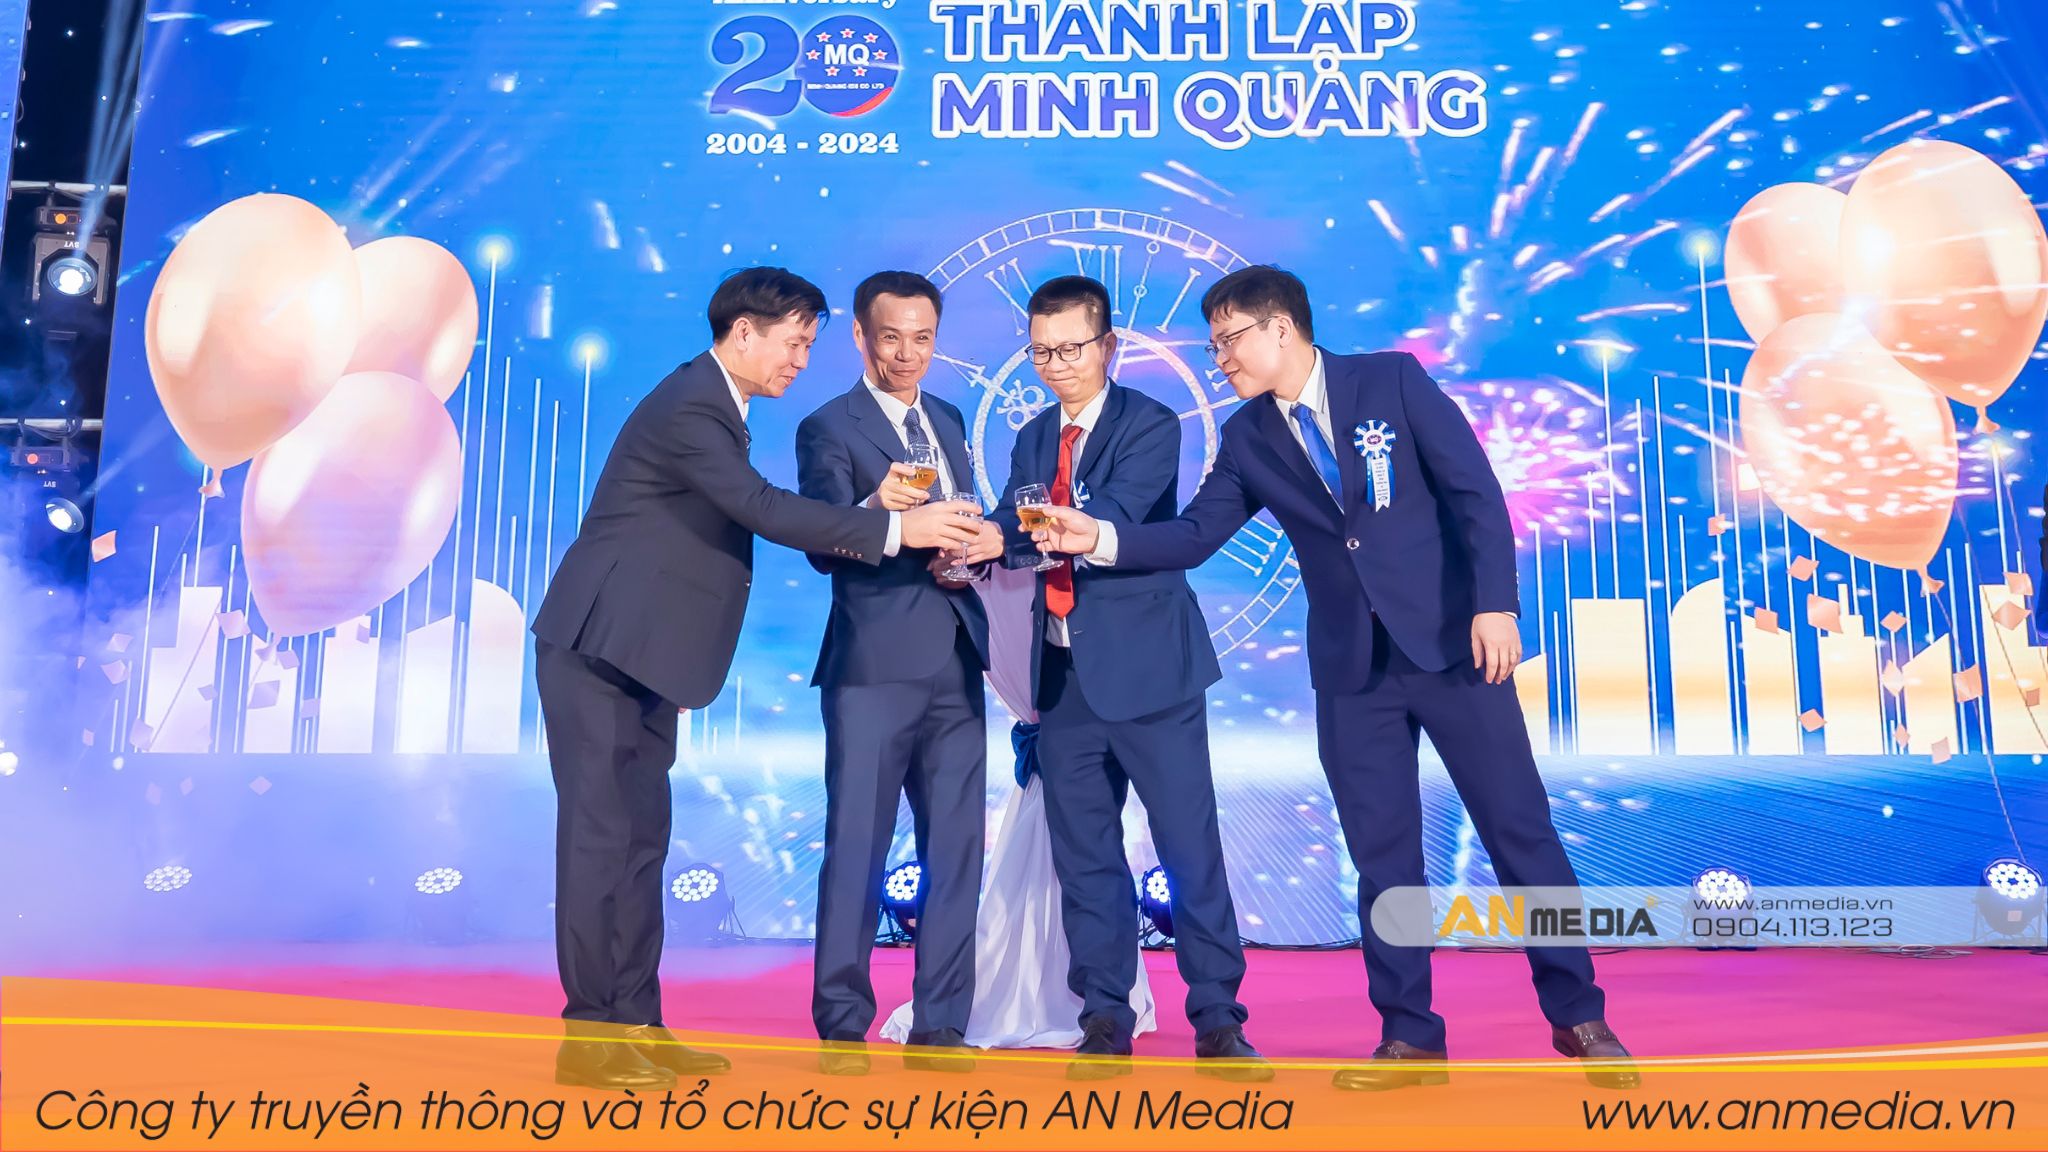 Những khoảnh khắc ấn tượng tại Lễ kỷ niệm 20 năm thành lập Công ty TNHH Thương mại và Công nghiệp Minh Quang